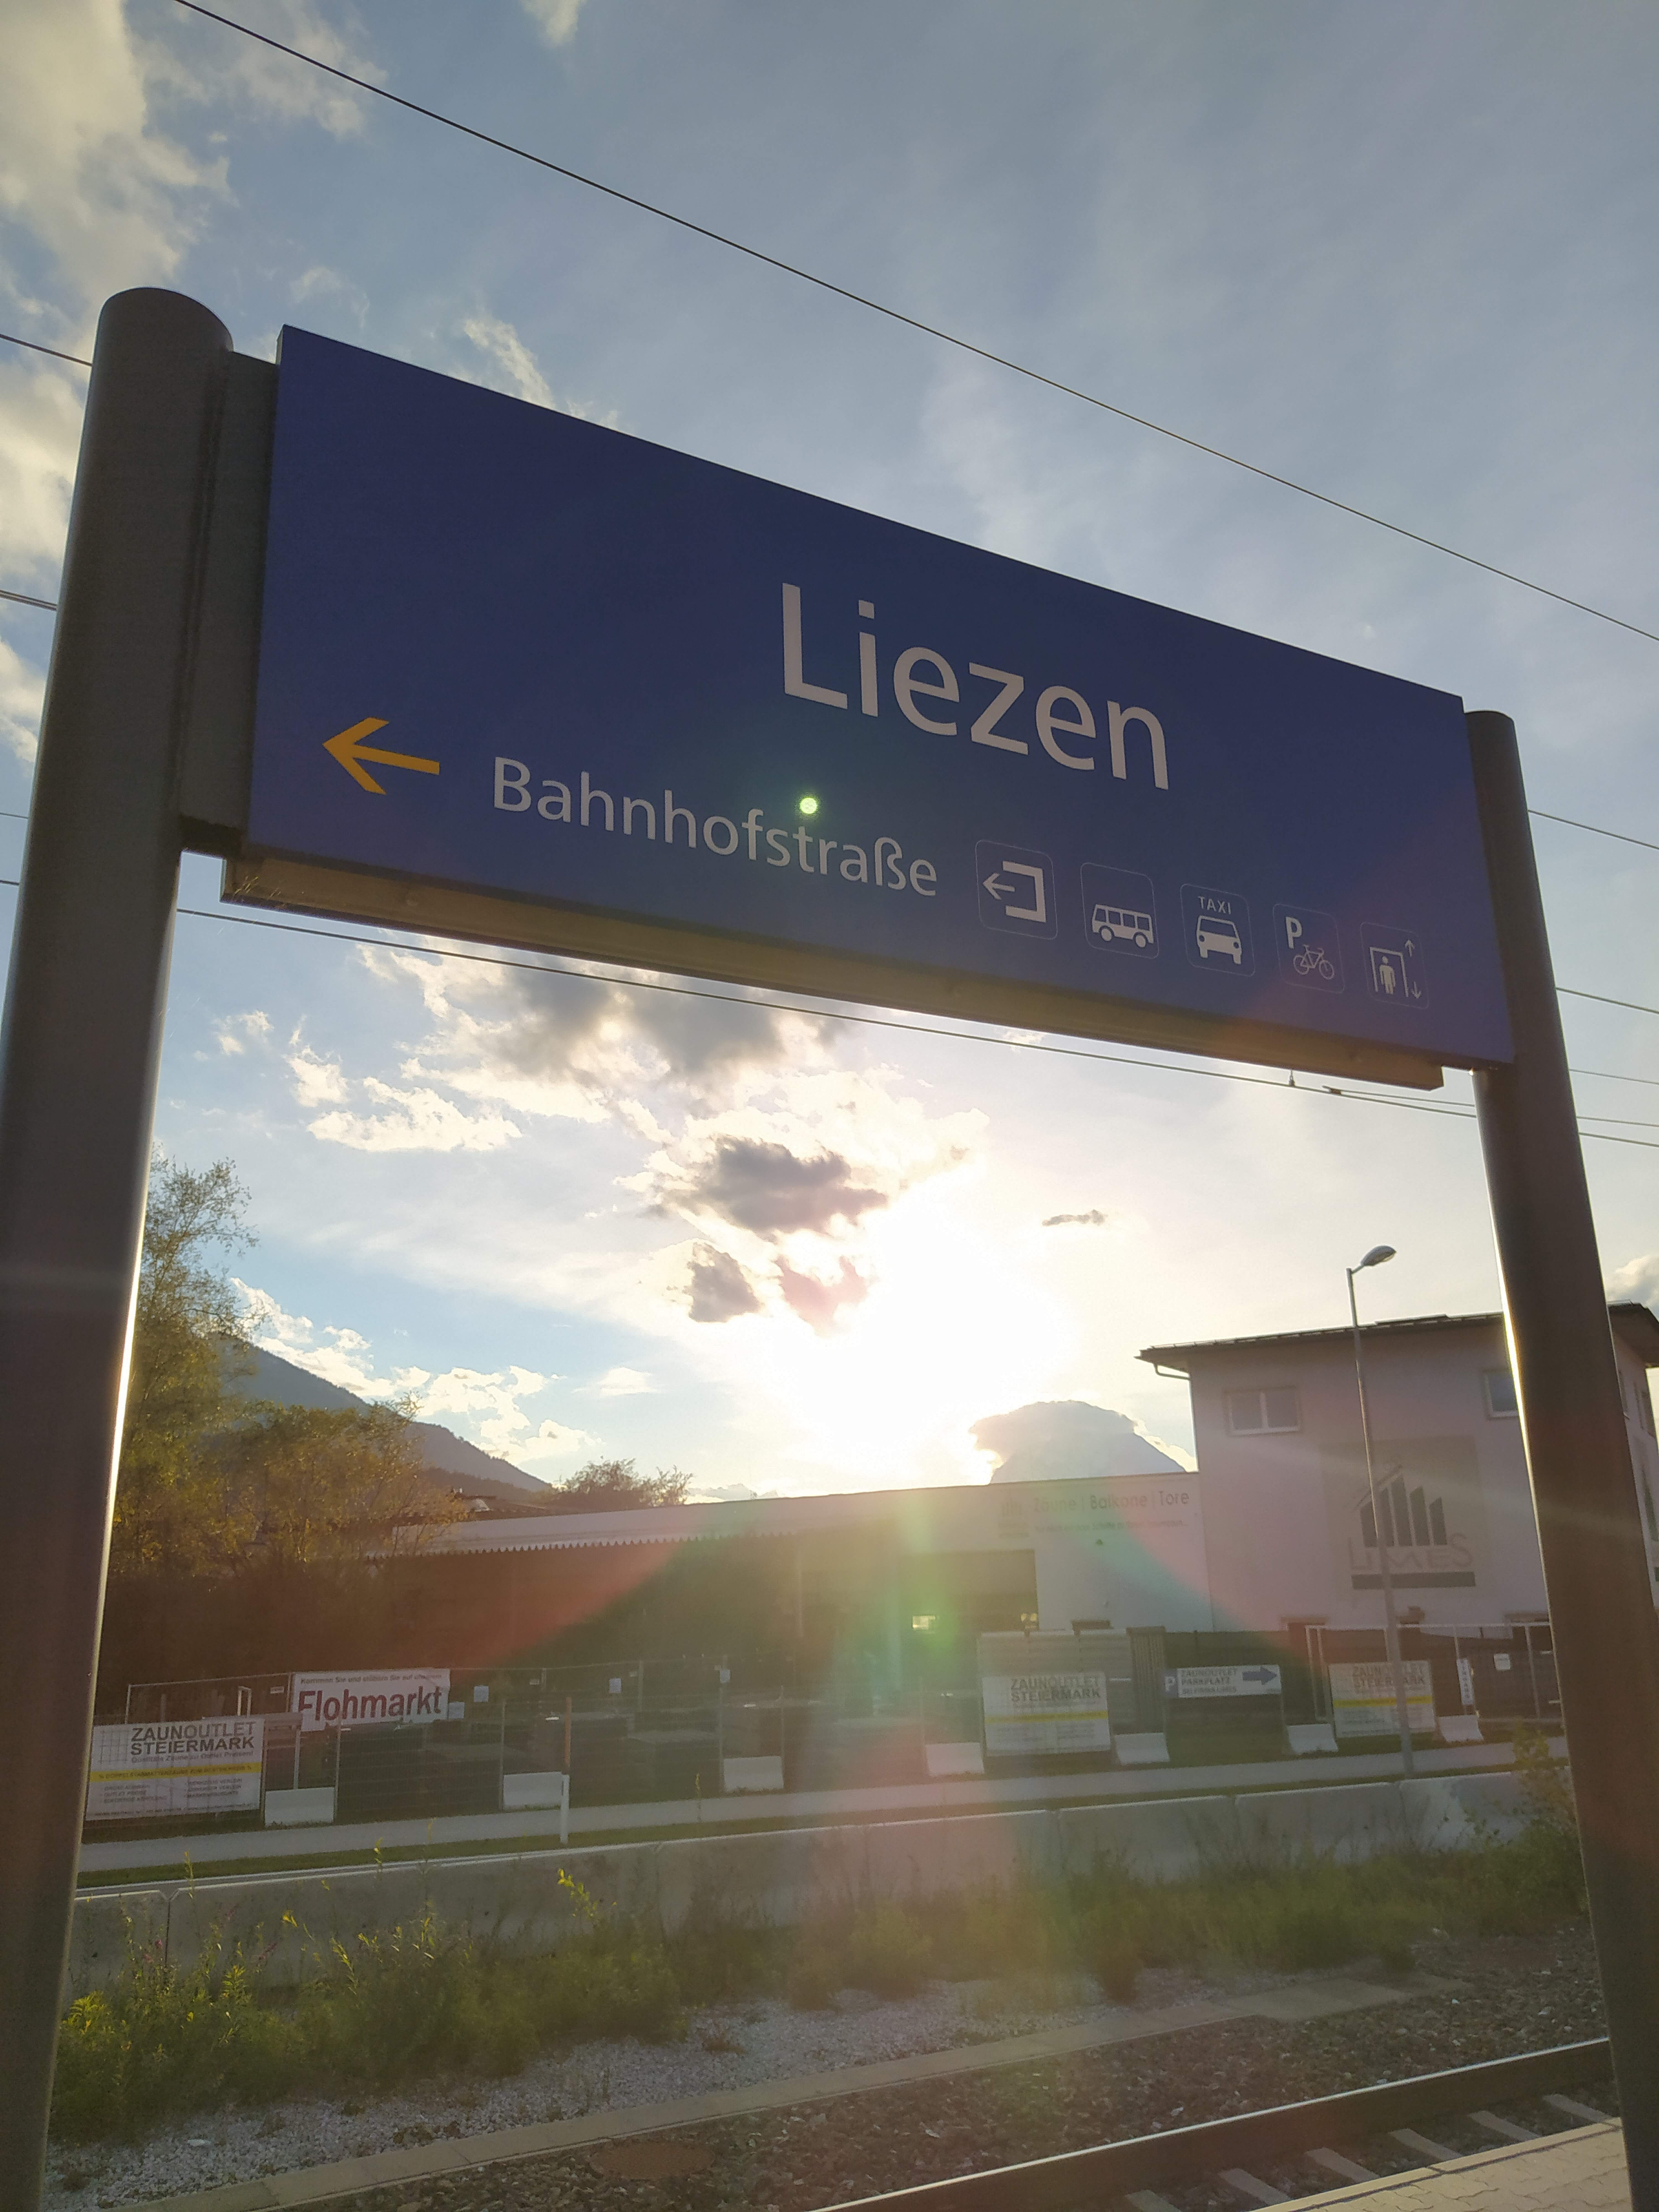 Bahnhof: Liezen, Stainach-Irdning, Selztal